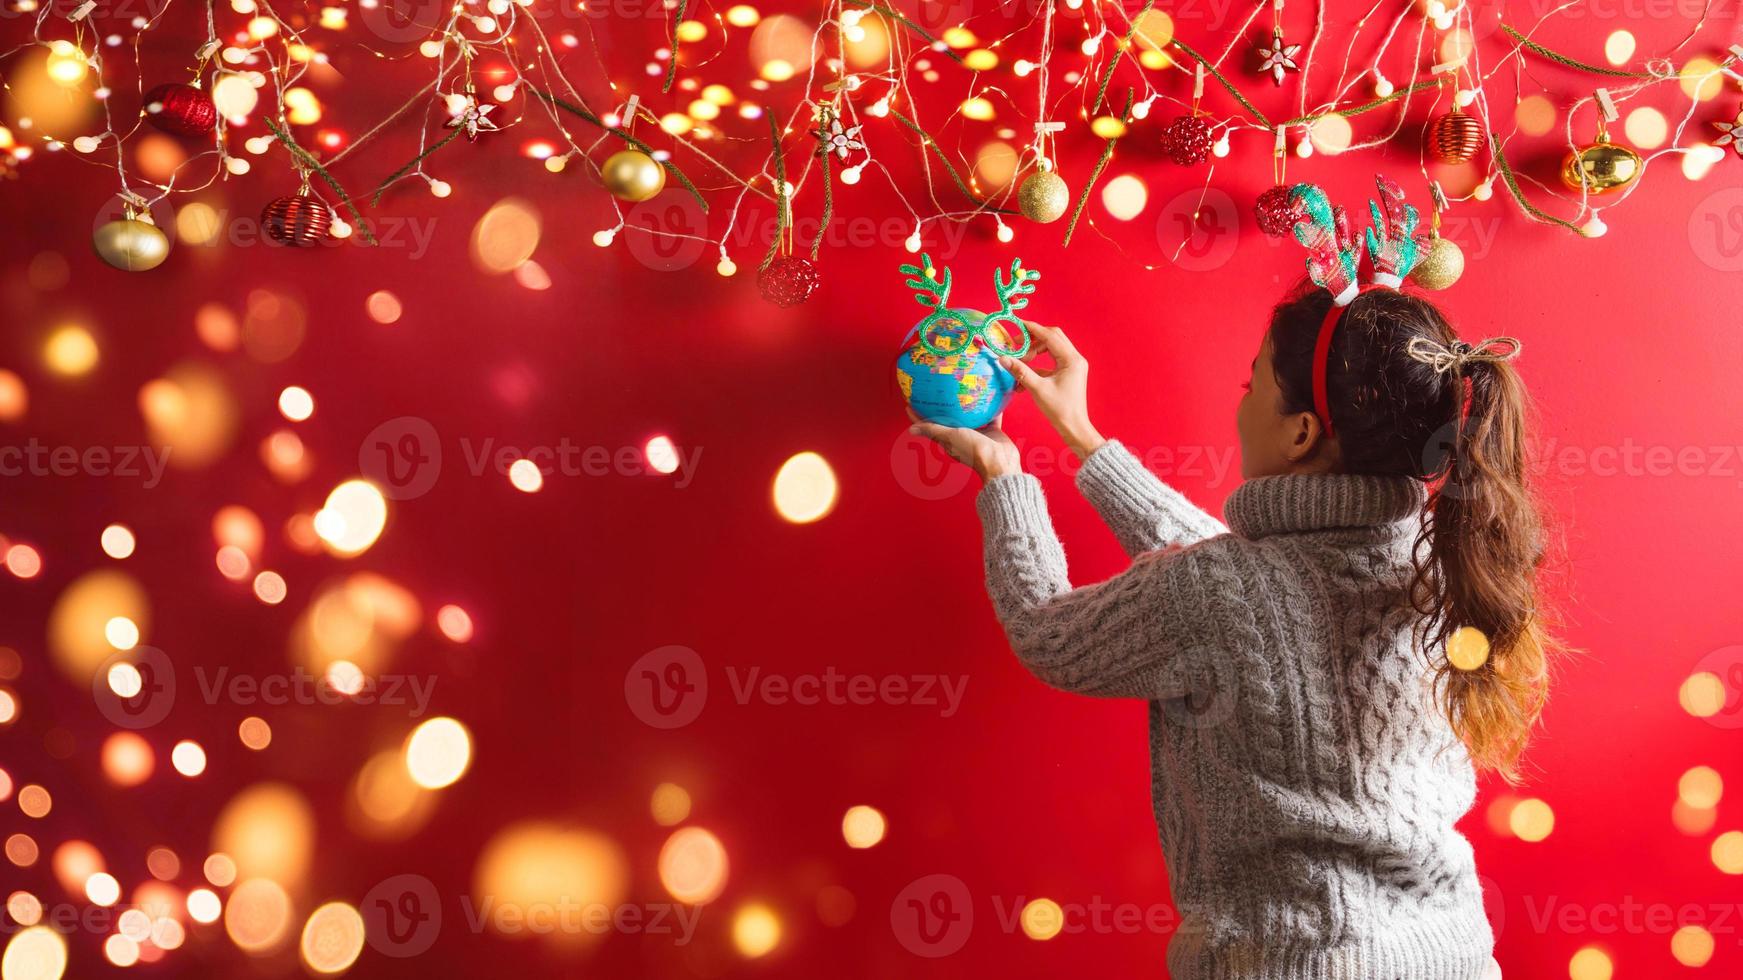 feliz navidad y próspero año nuevo.la niña está diseñando con adornos navideños. el fondo de navidad rojo. con espacio de copia para su texto. Luces led foto